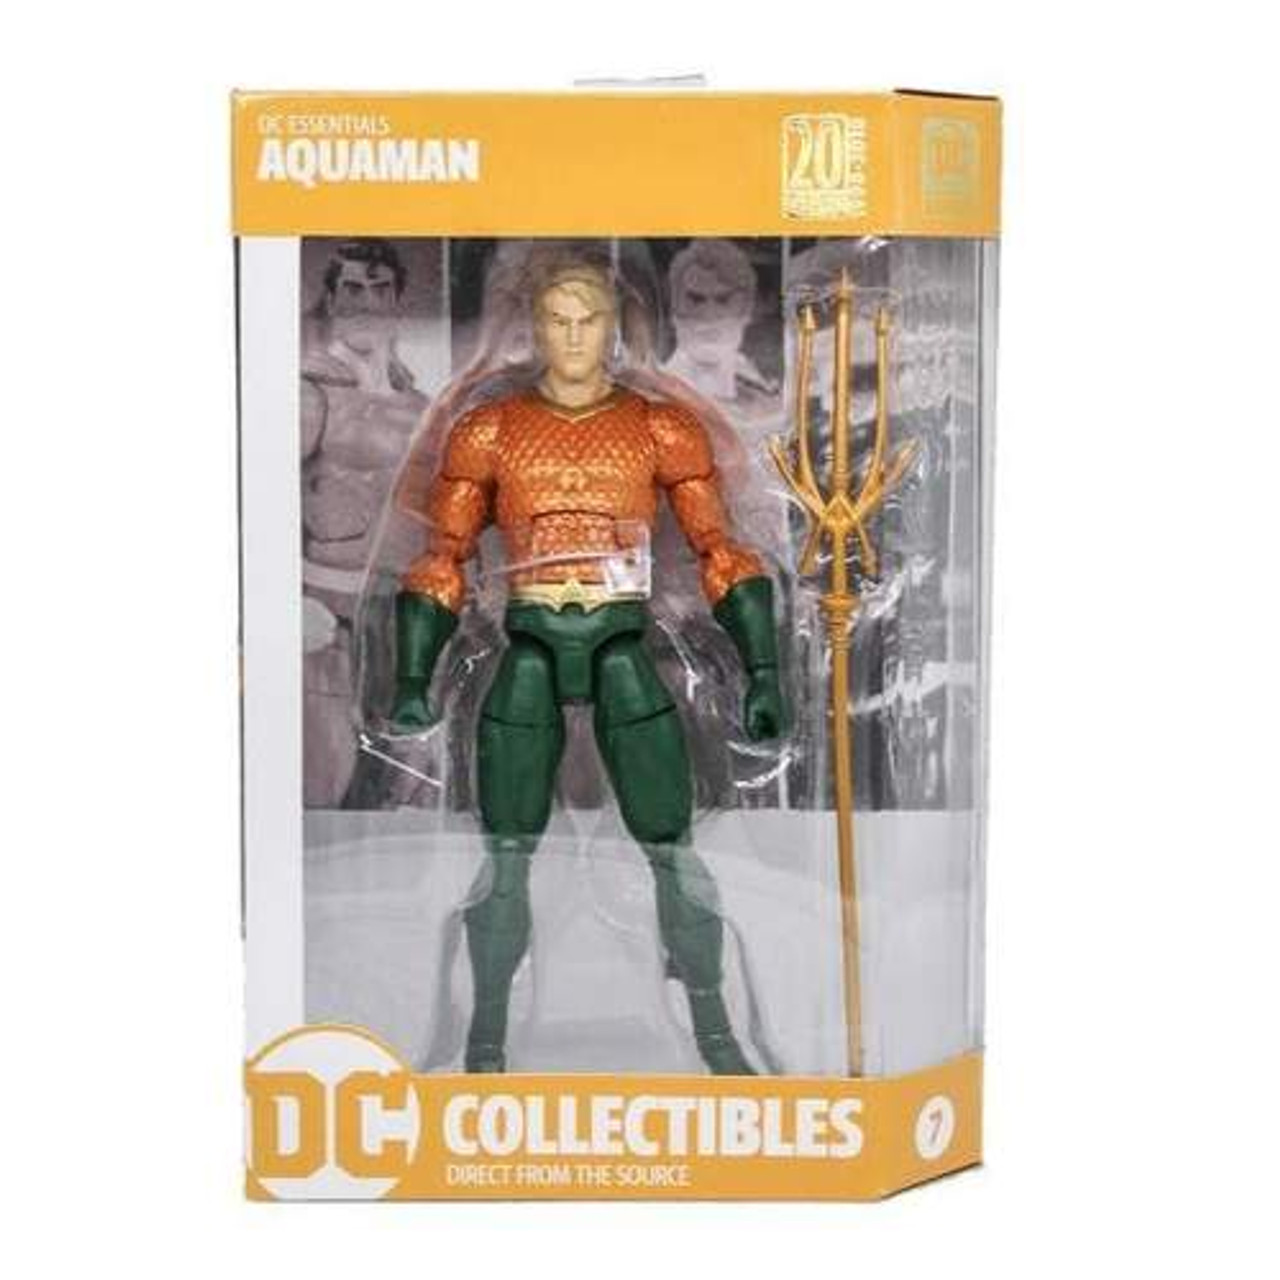 DC Essentials: Aquaman Action Figure